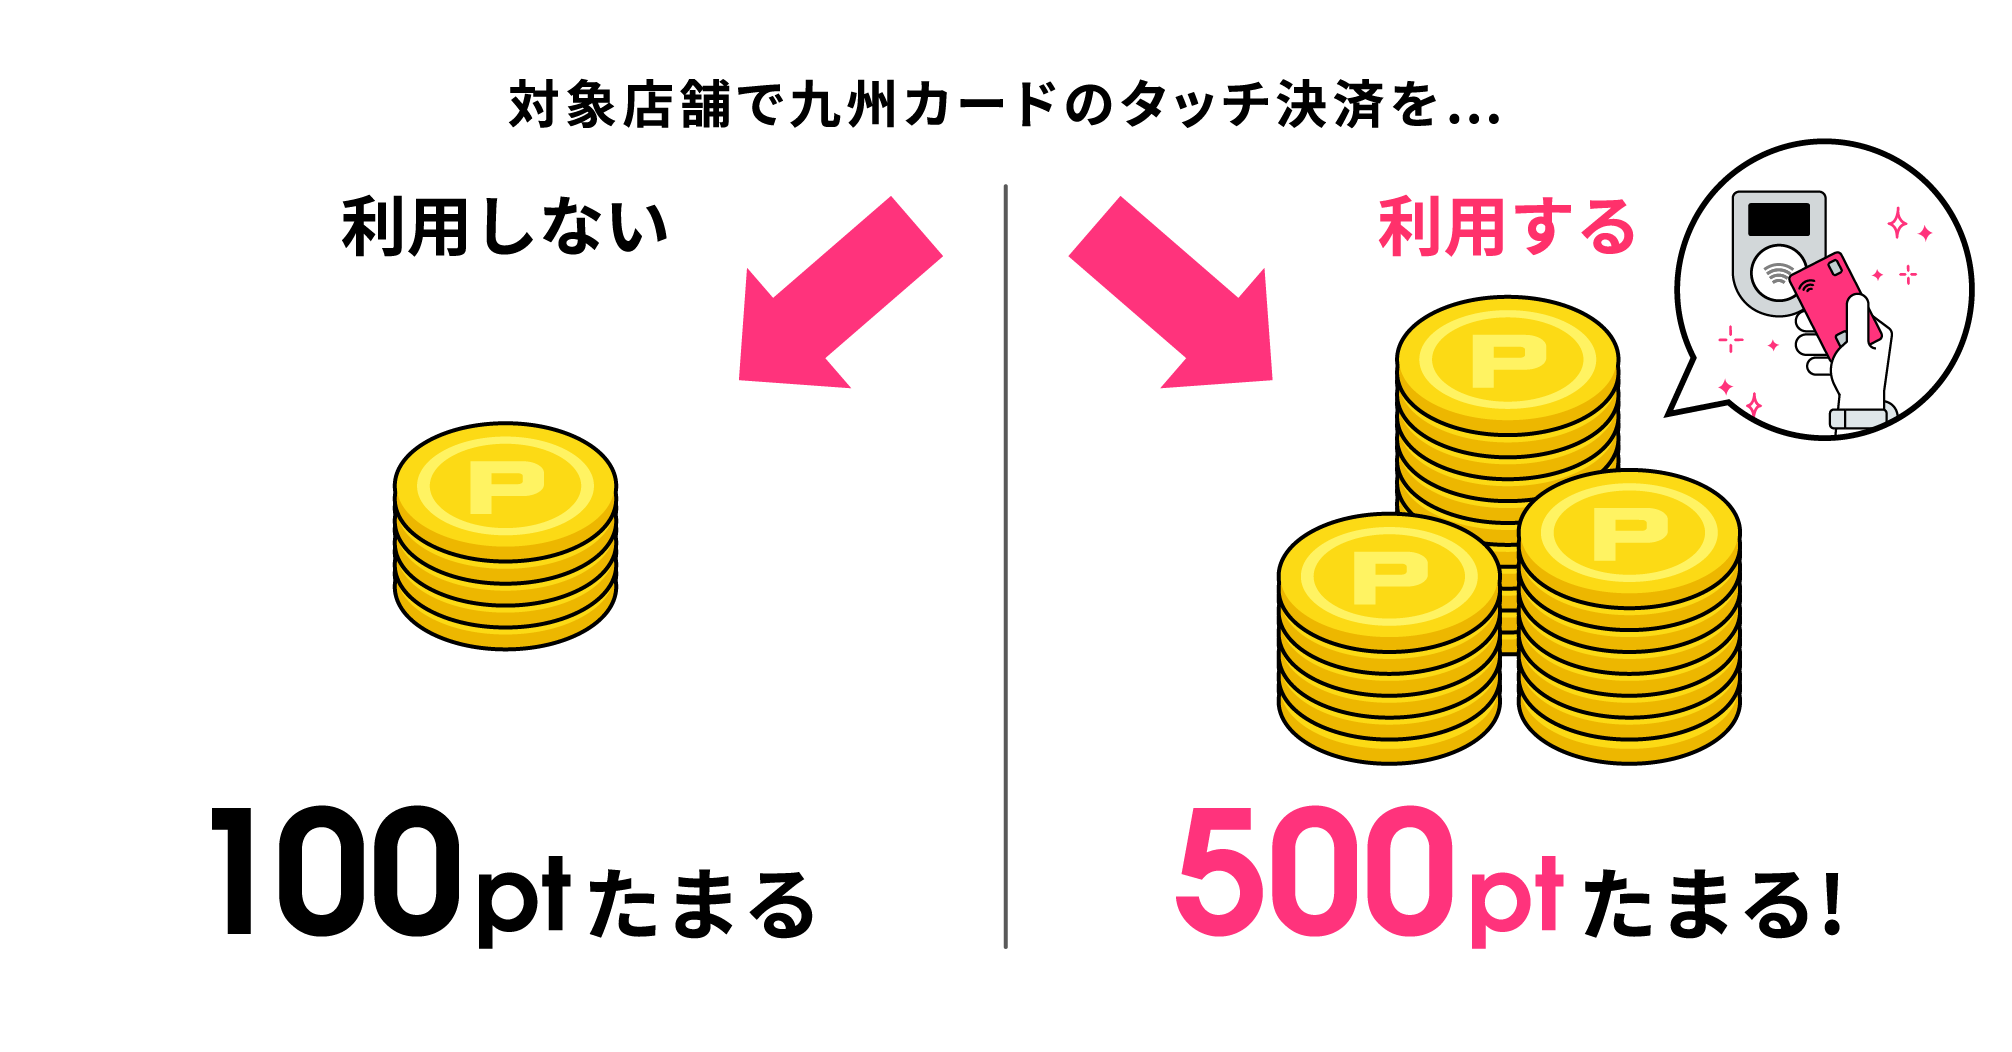 対象店舗で九州カードのタッチ決済を… 利用しない100ptたまる 利用する500ptたまる!